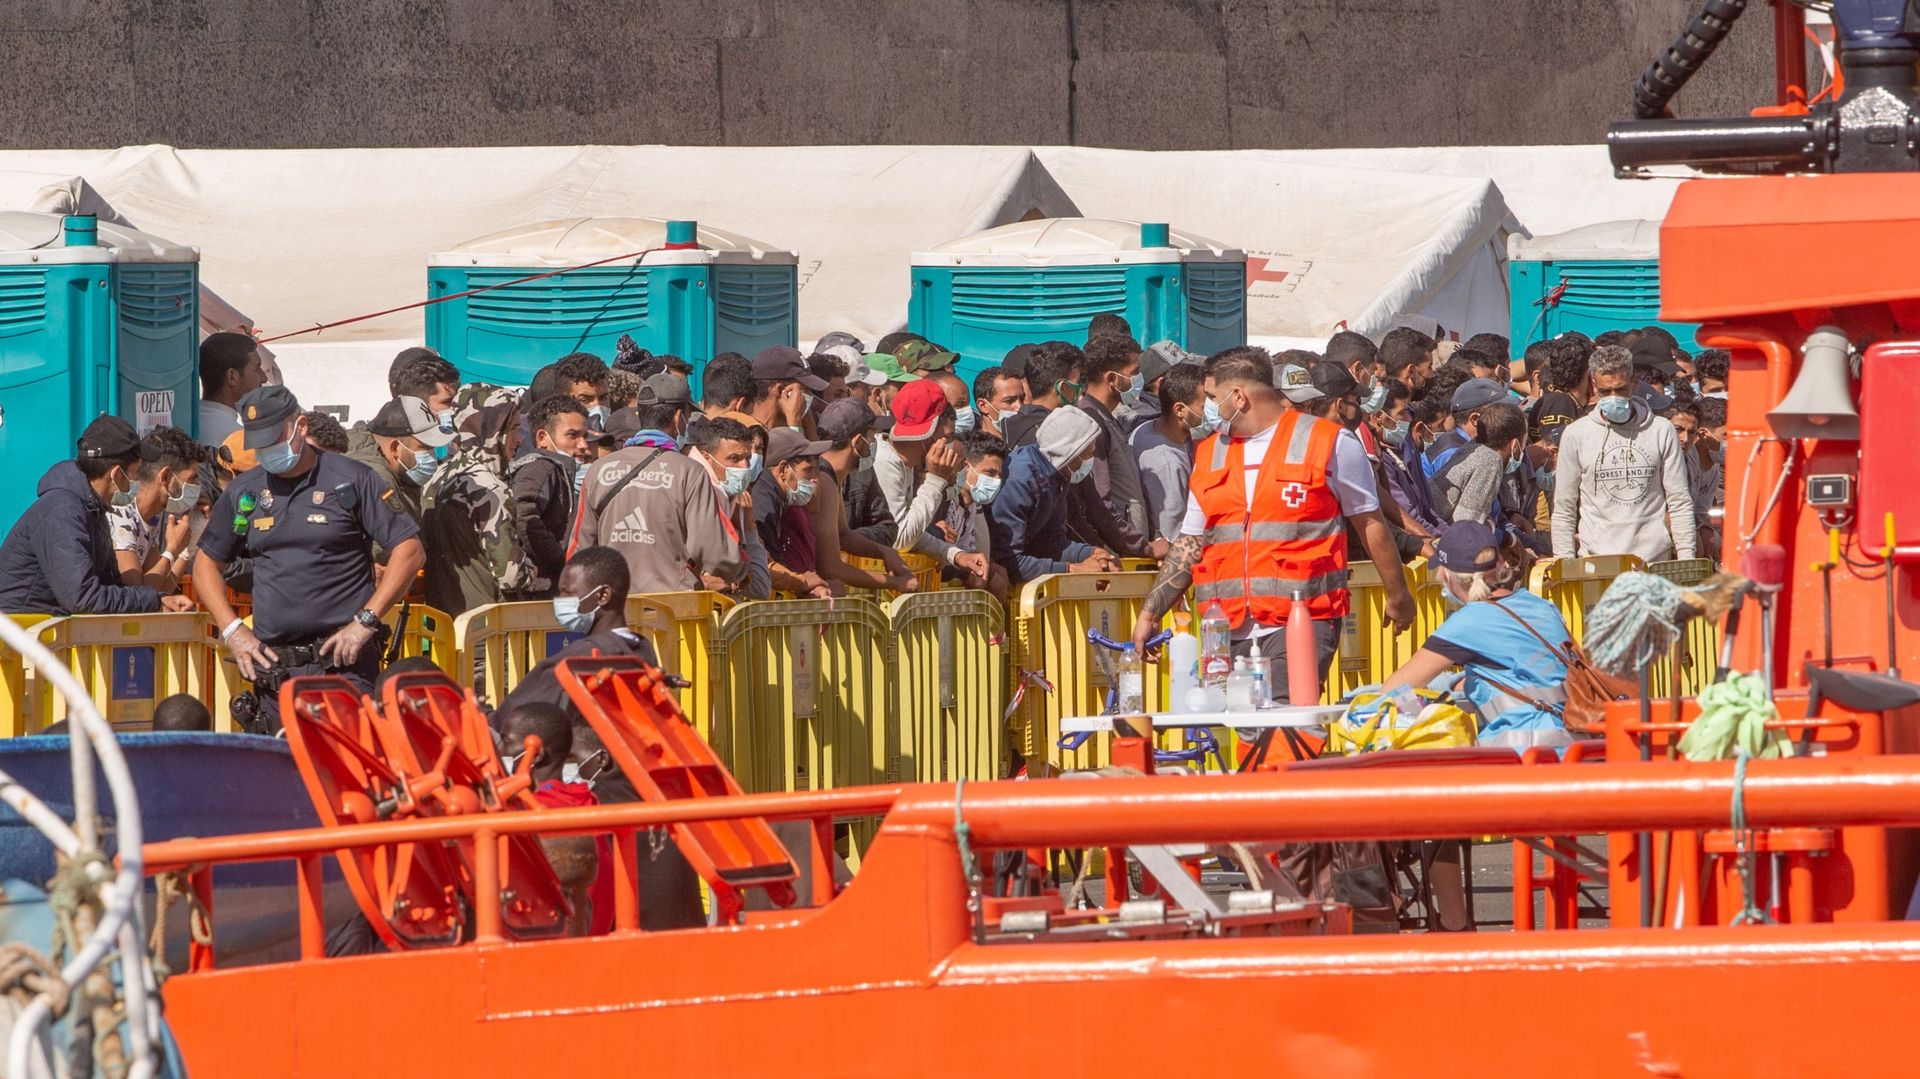 Un groupe de migrants arrive au port d'Arguineguin après avoir été secouru par les garde-côtes espagnols dans l'île canarienne de Gran Canaria le 23 novembre 2020. Les arrivées de migrants ont grimpé en flèche dans les îles Canaries espagnoles avec plus d